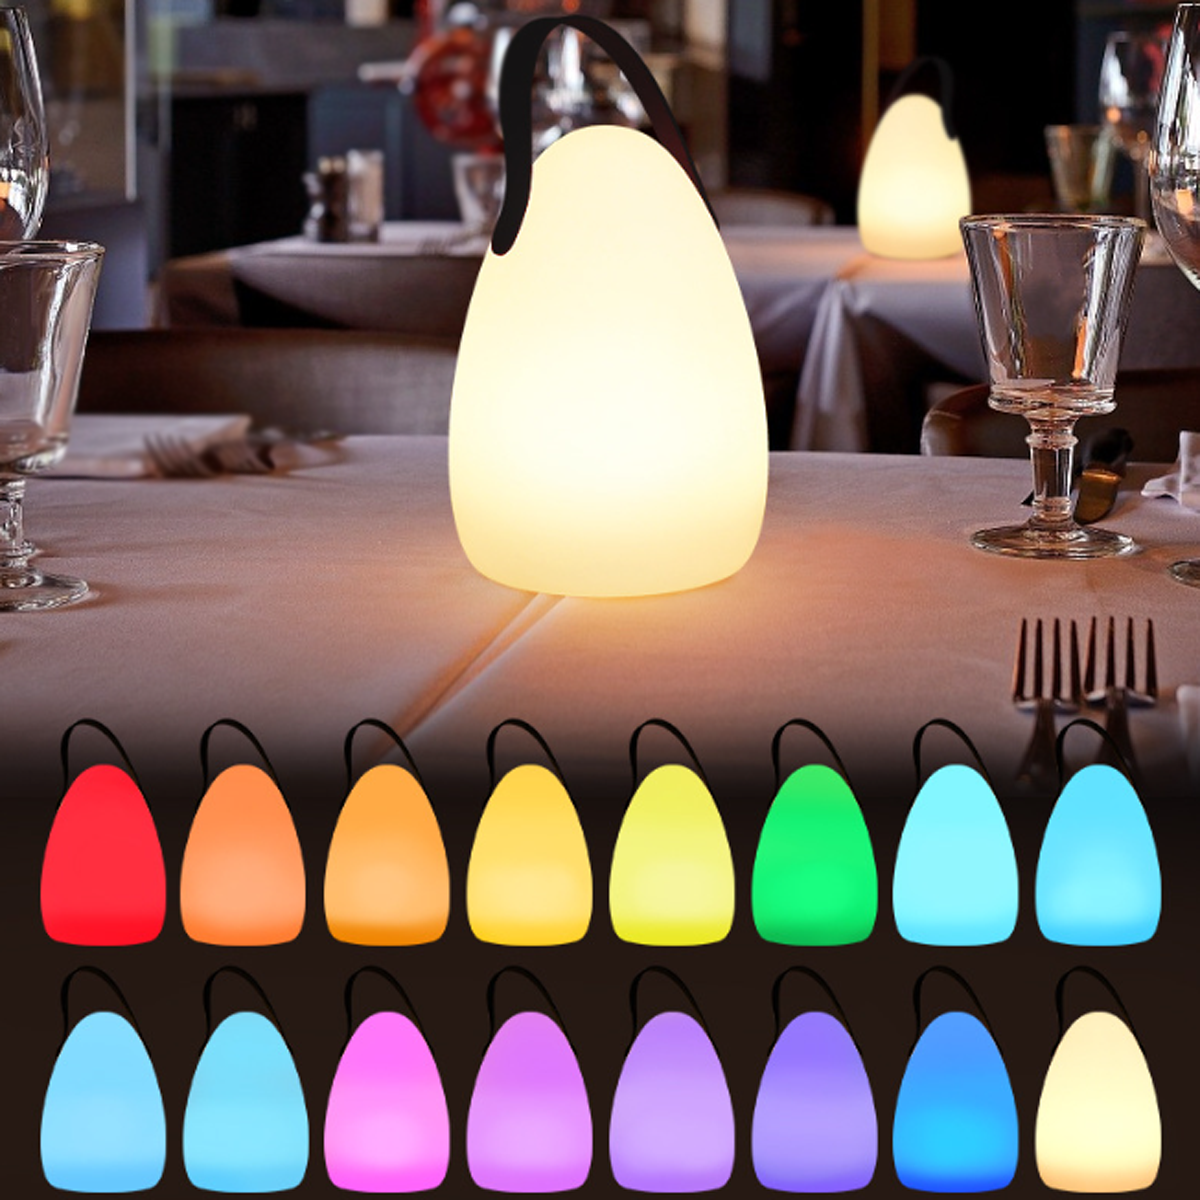 Lichtquelle, Eiförmige Tragbare Dekoration BYTELIKE - Tischlampe Augenschonende Beleuchtung 16 Fernbedienungsschalter, Lichtfarben